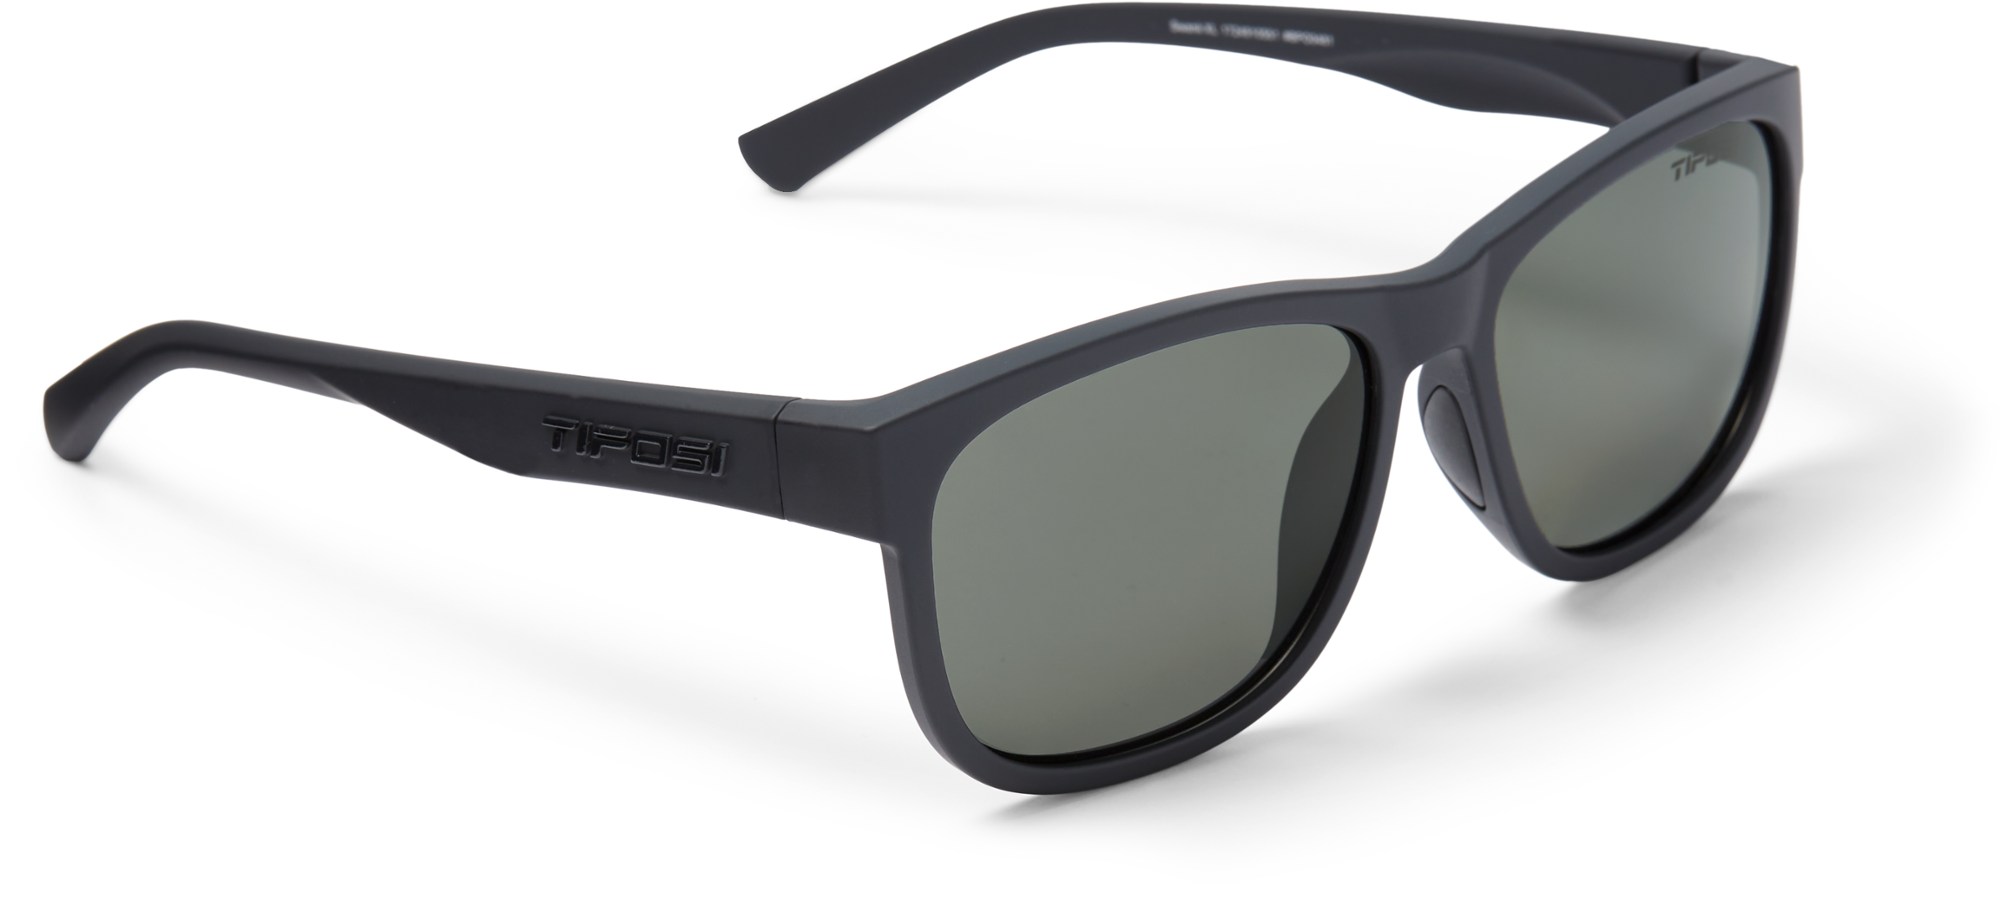 Поляризованные солнцезащитные очки Swank XL Tifosi, черный фото